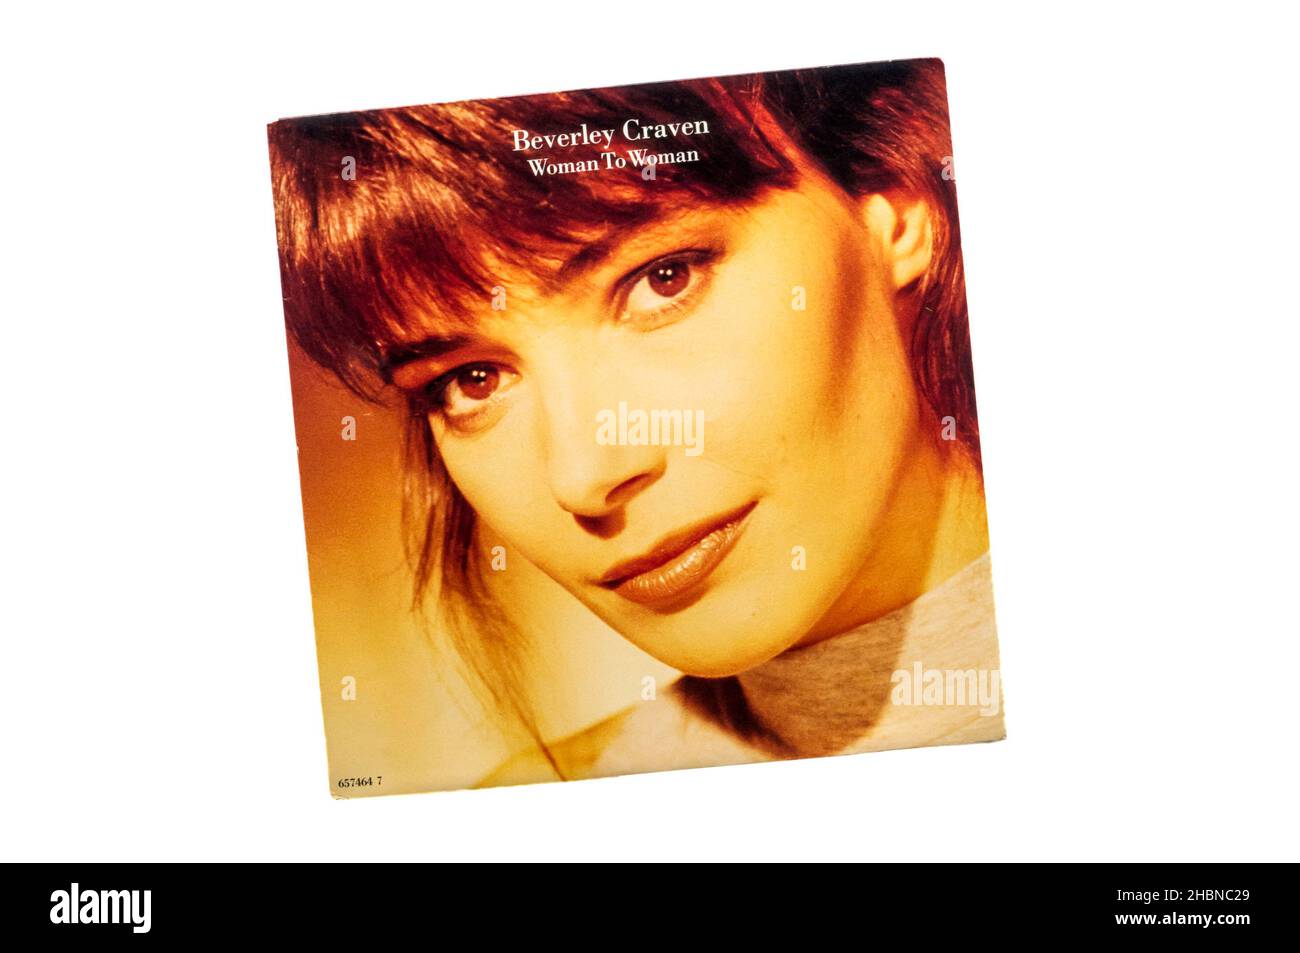 1991 reedición del single de 1990 7', Mujer a Mujer por Beverley Craven. Foto de stock